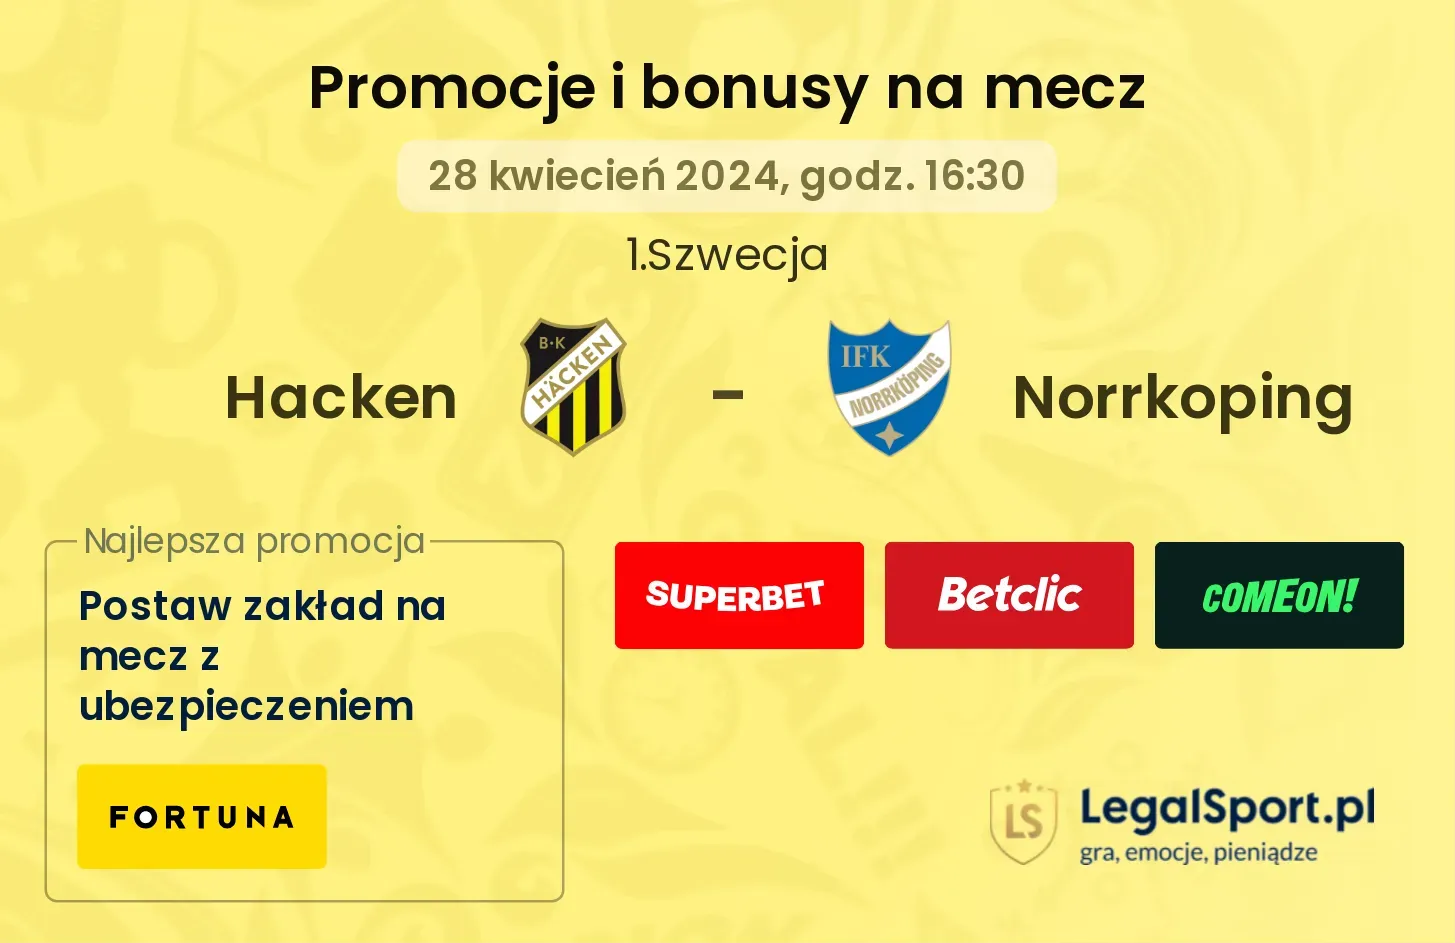 Hacken - Norrkoping promocje bonusy na mecz